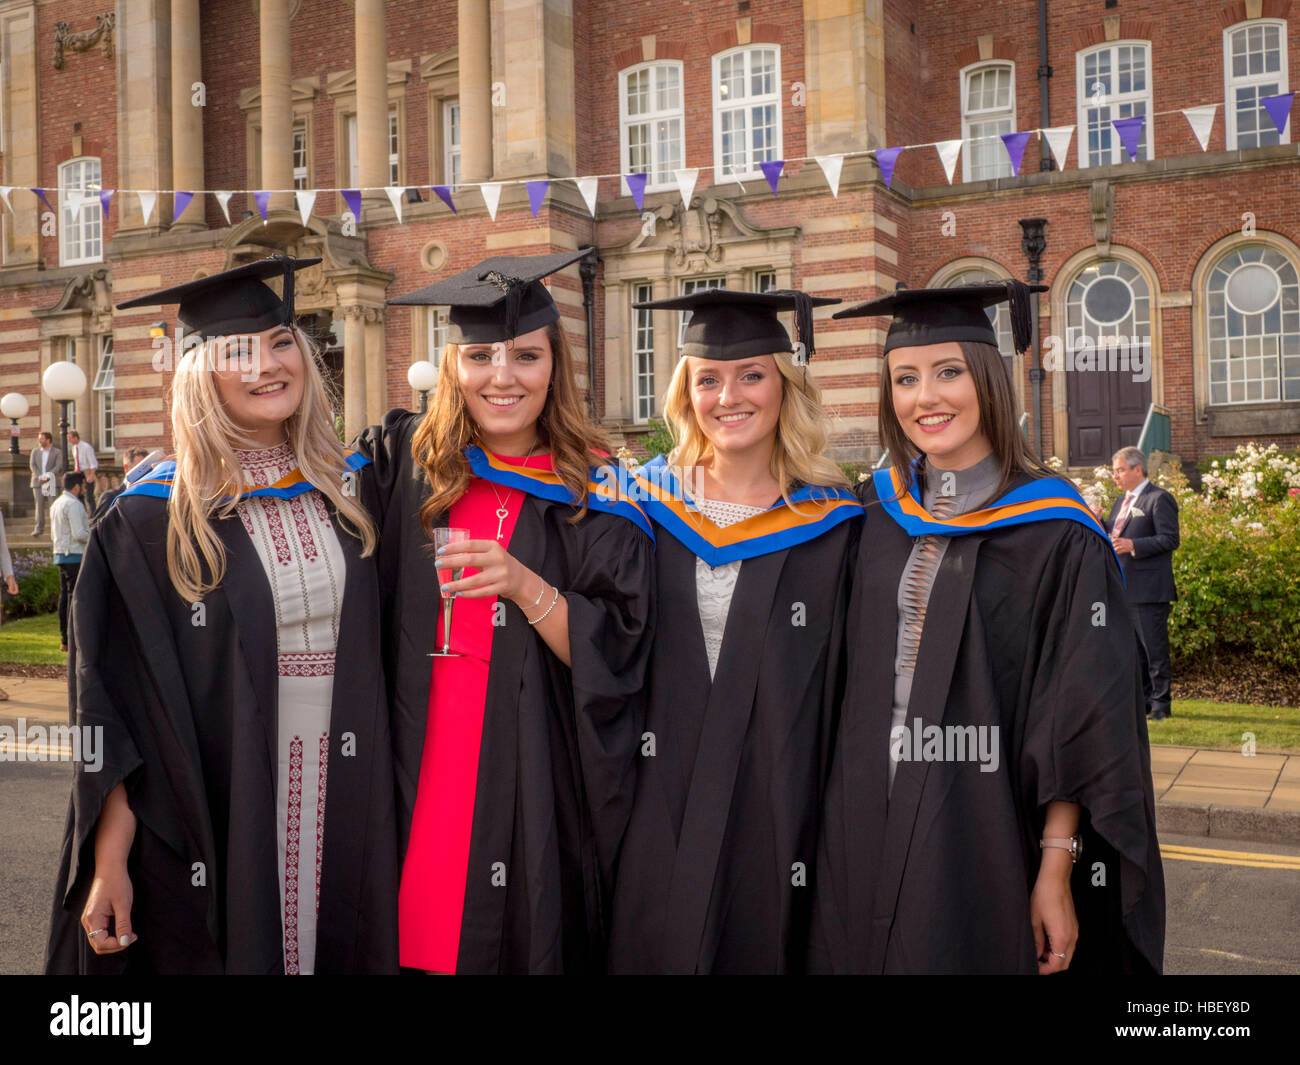 New graduates at UK university Stock Photo